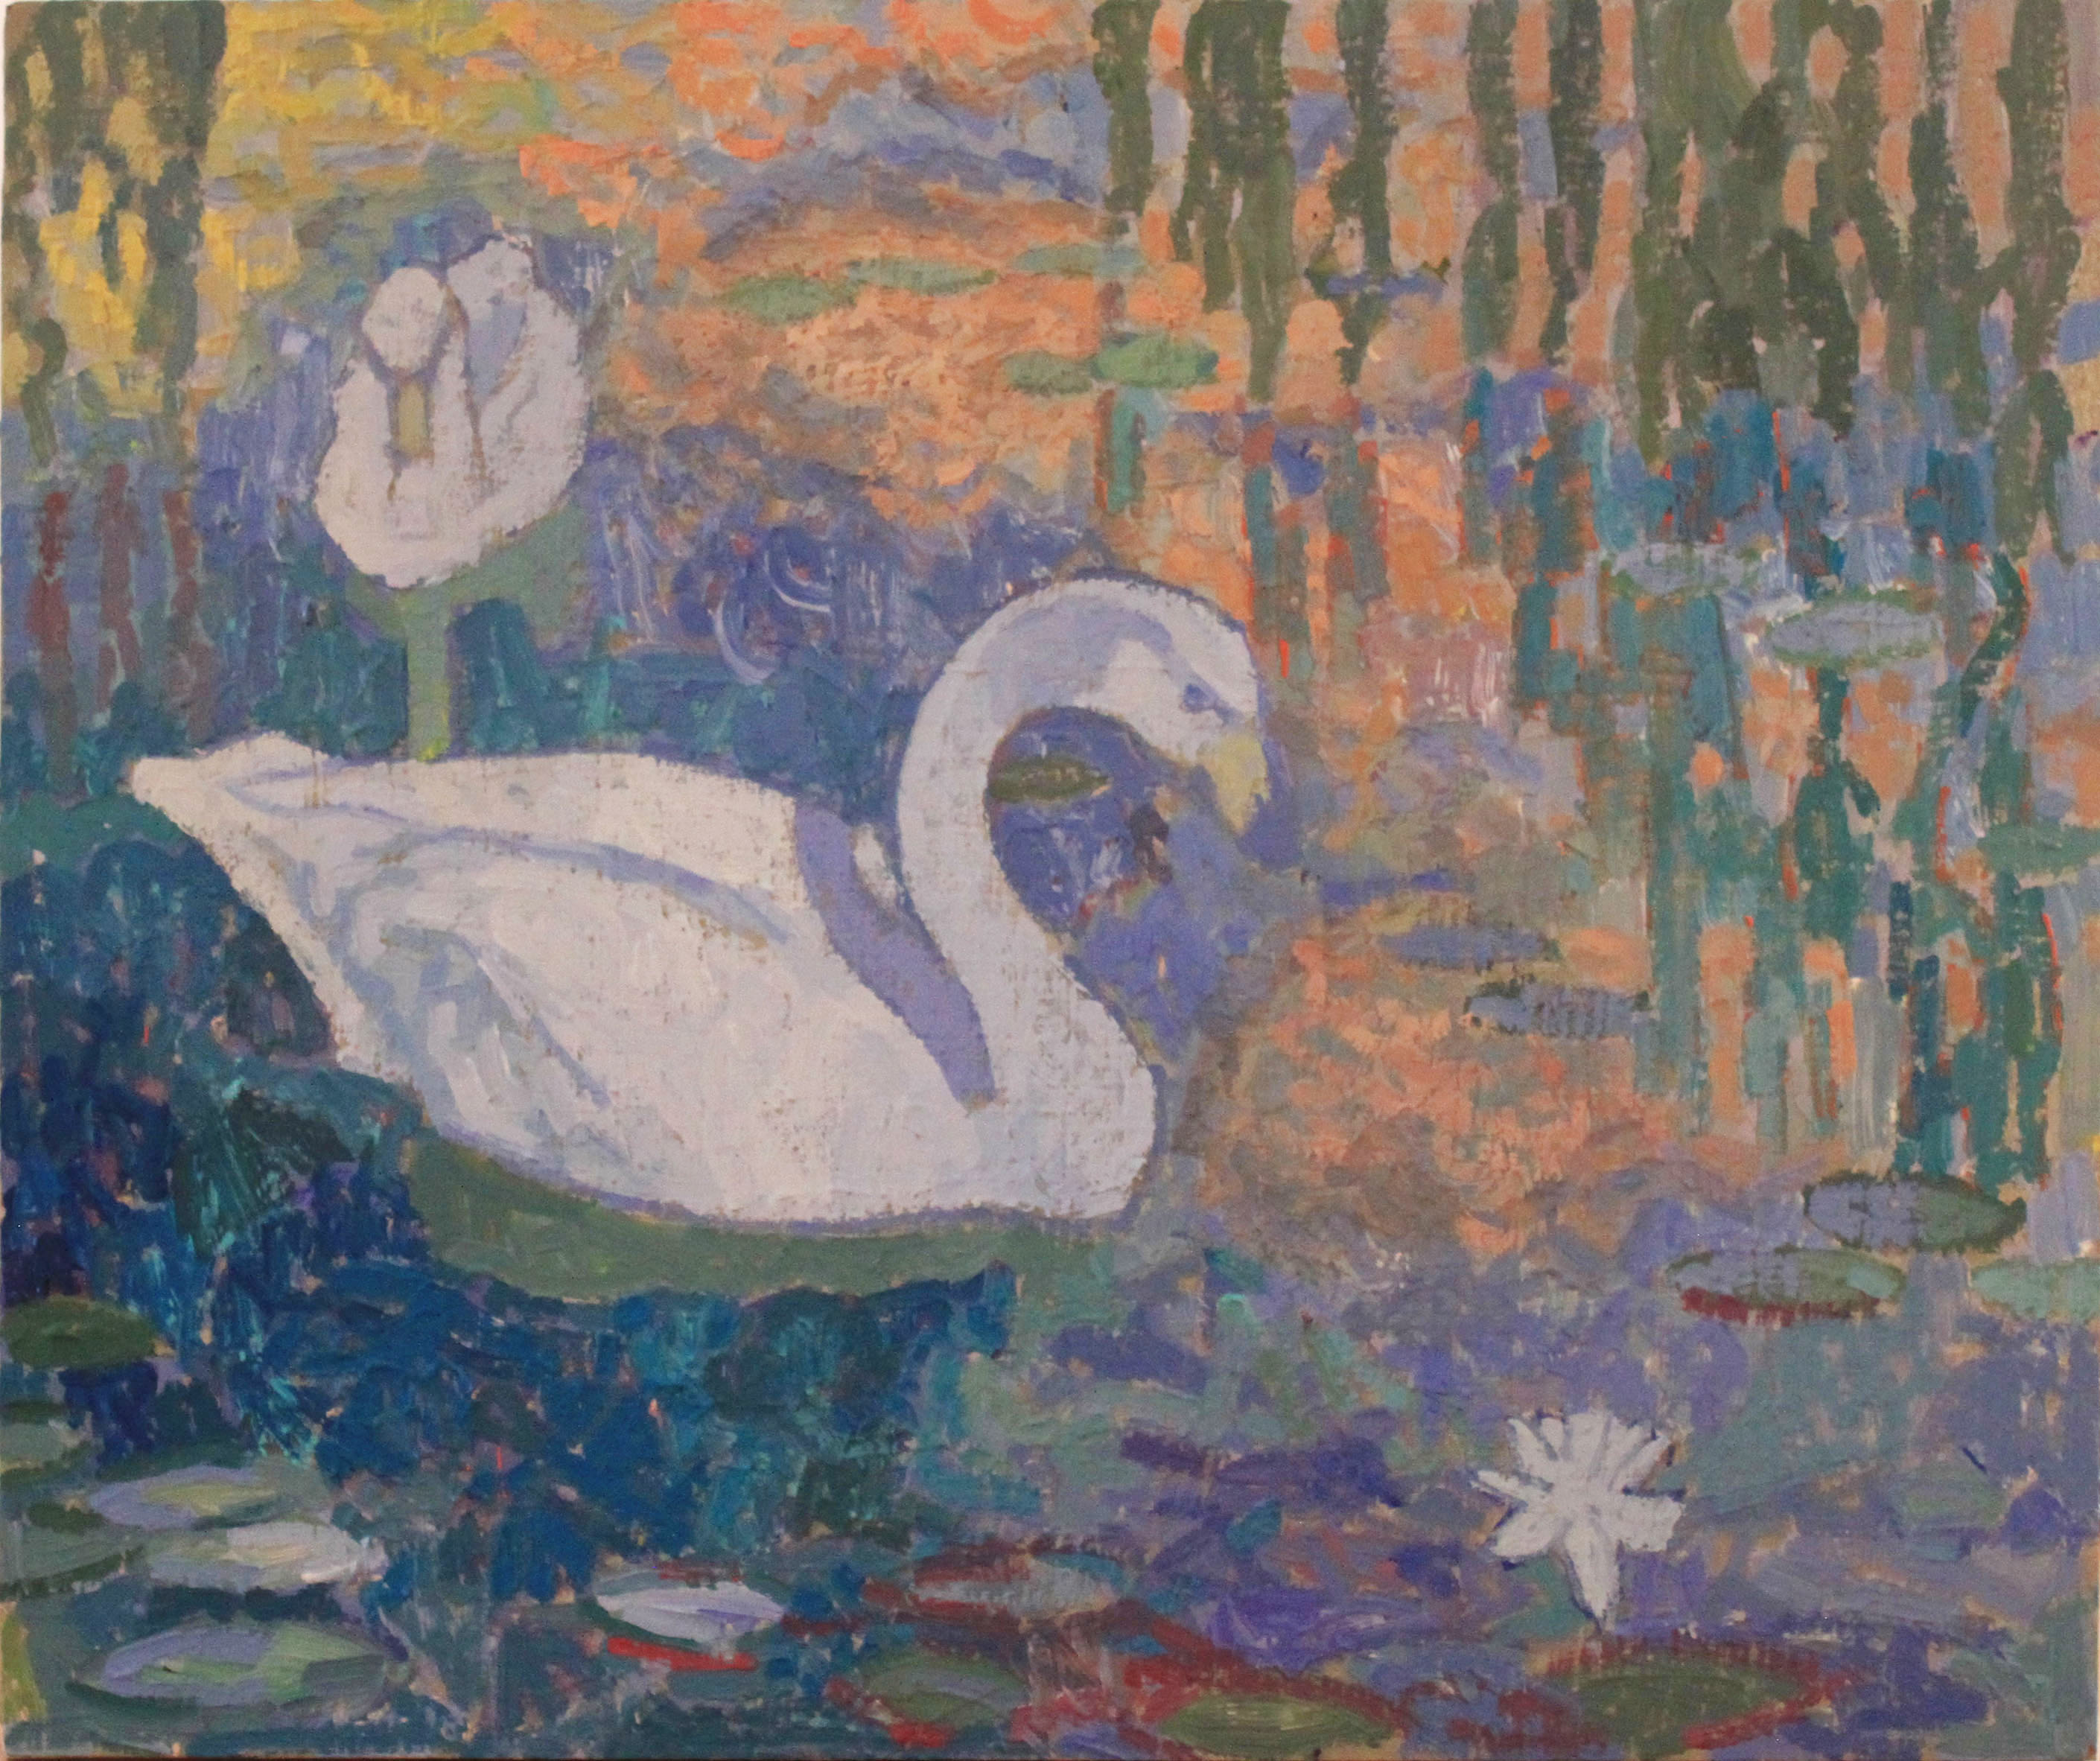 Swans, oil on wood, 10" x 12", $295